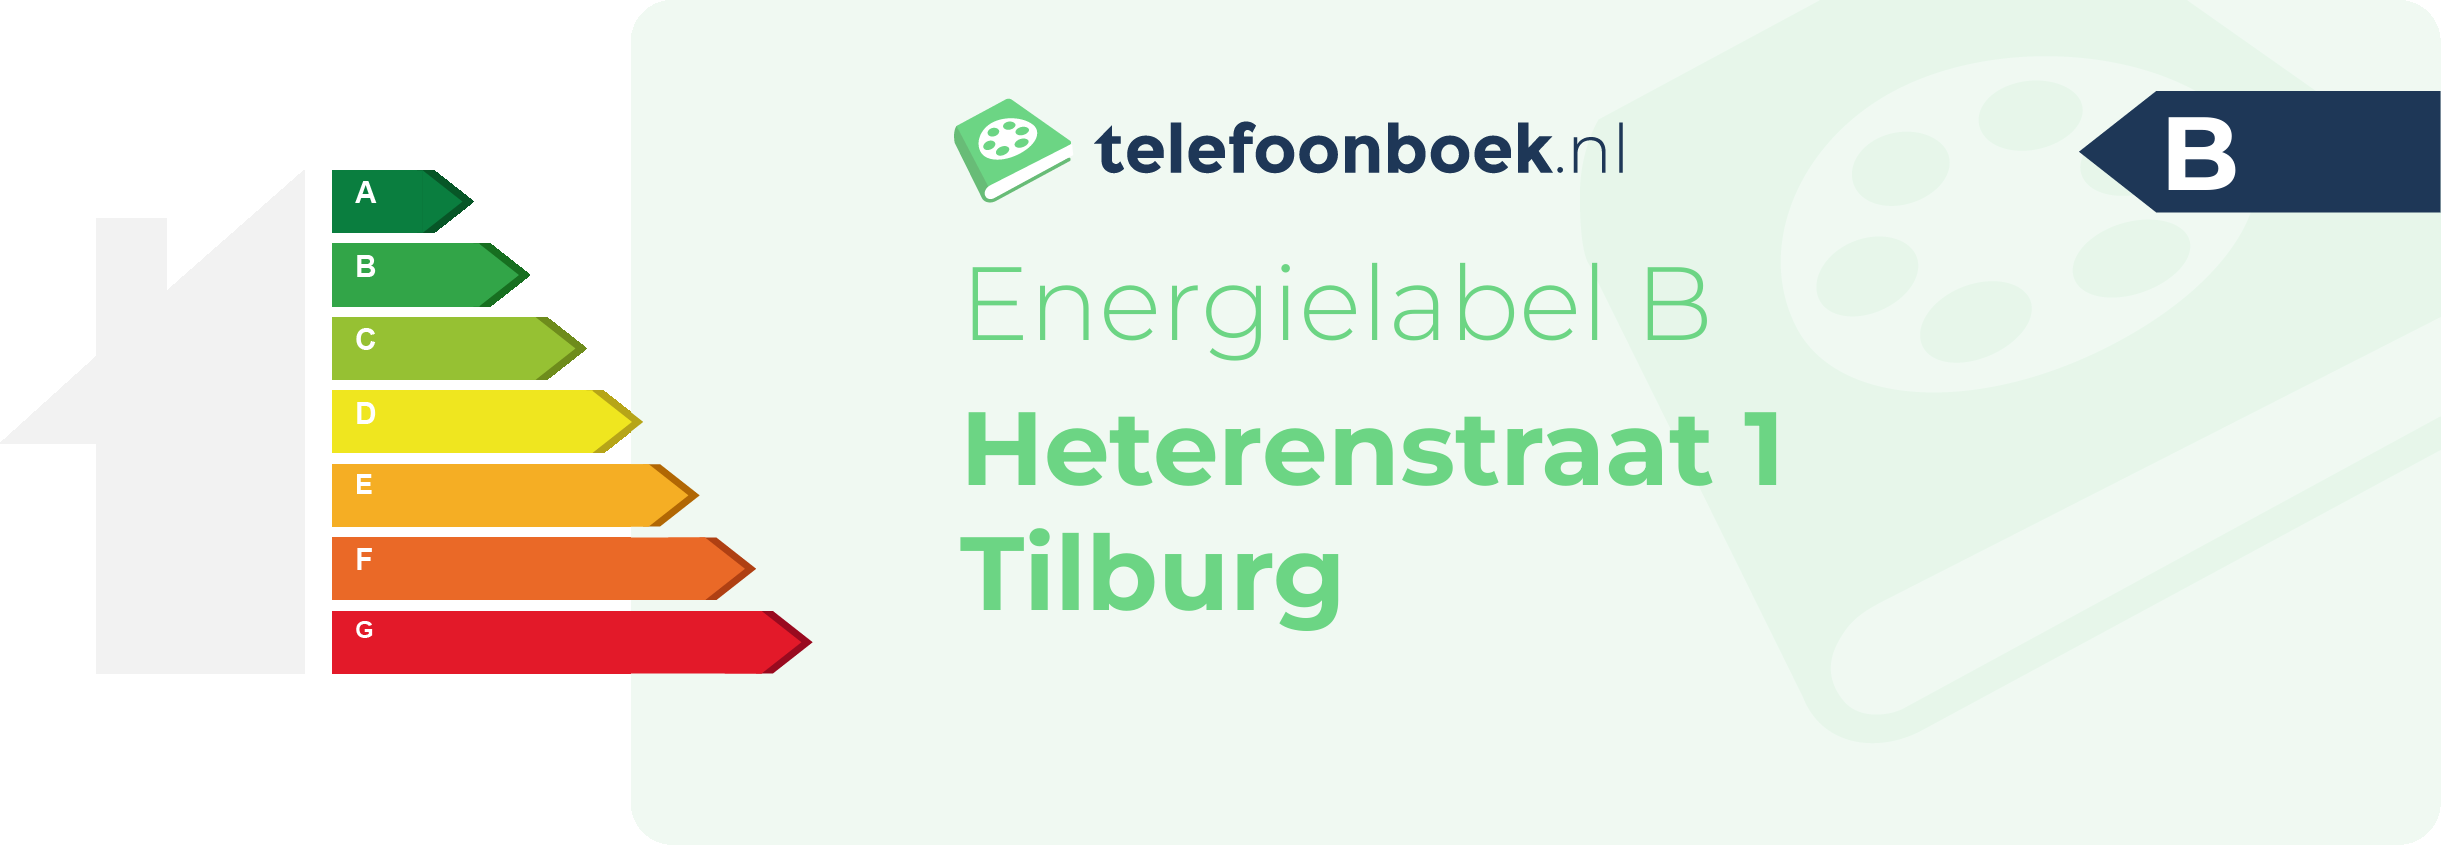 Energielabel Heterenstraat 1 Tilburg